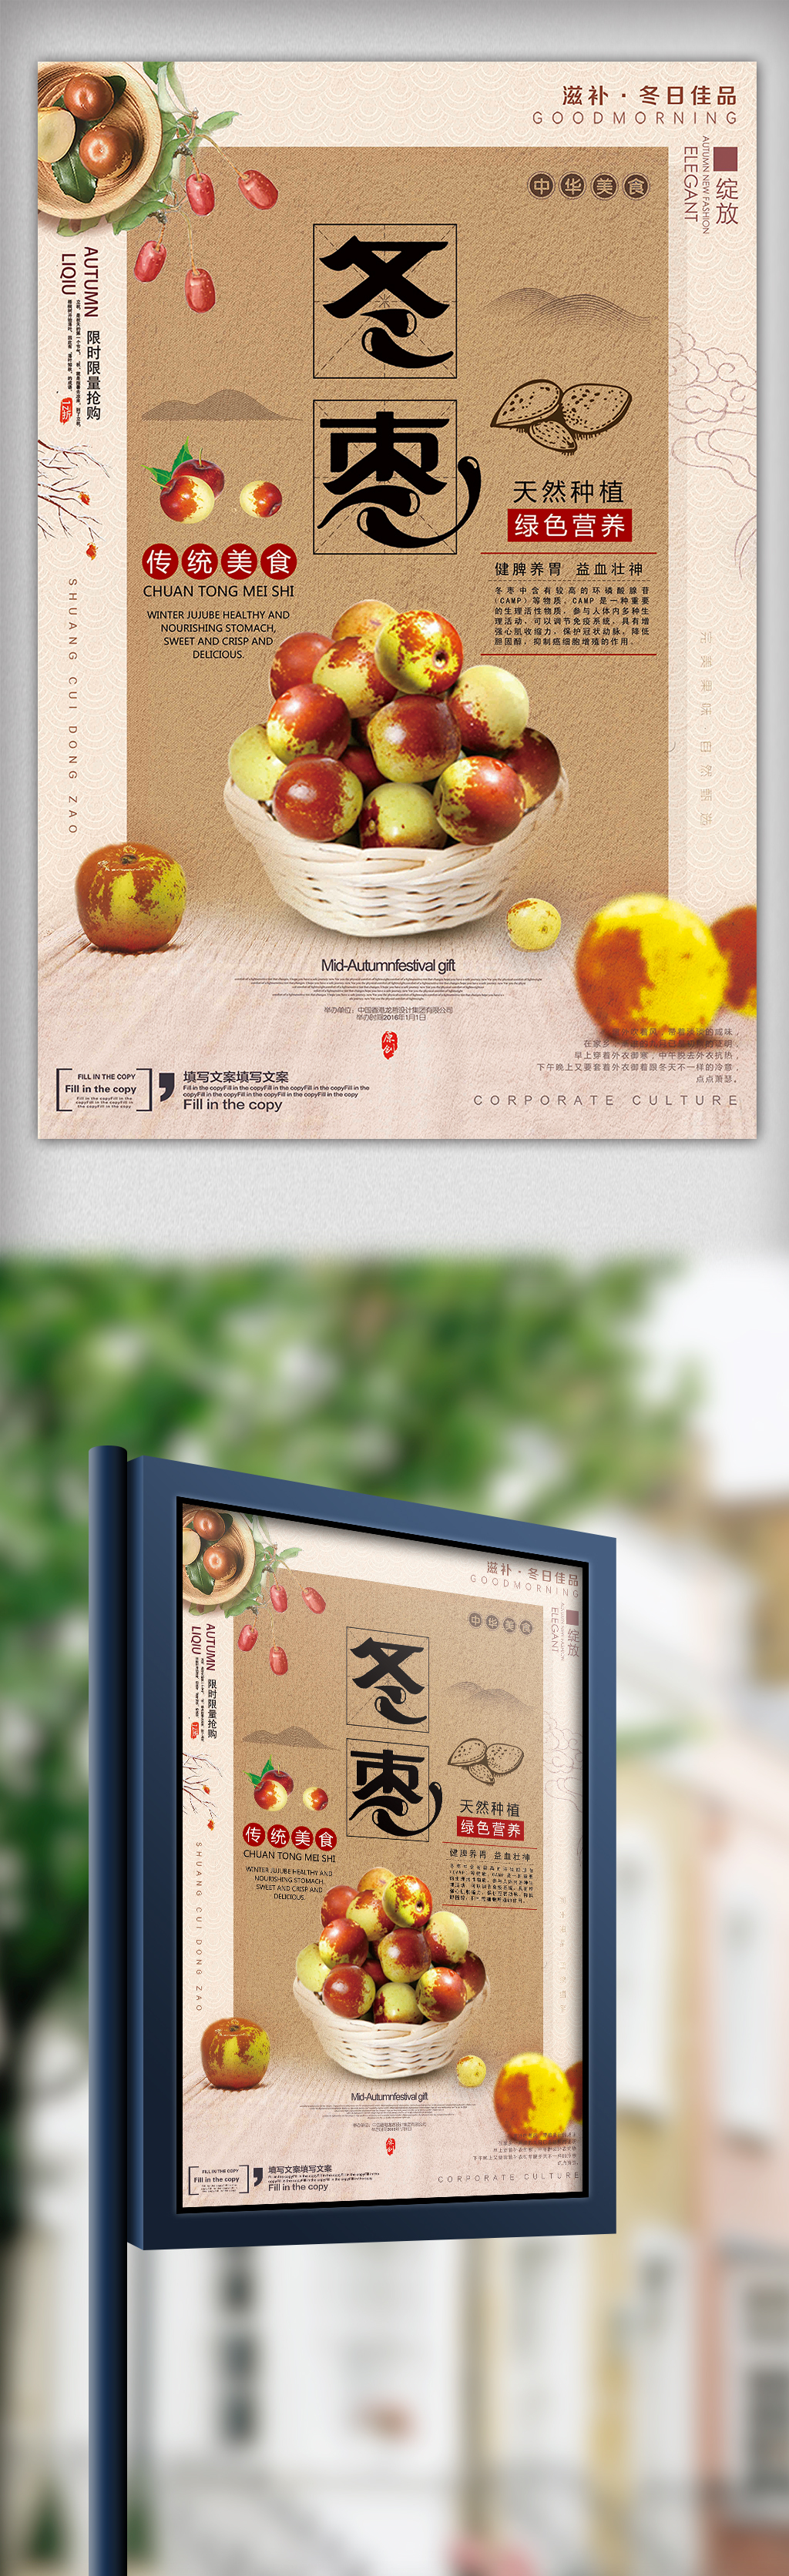 中国古典时尚现代风格传统美食海报冬枣图片